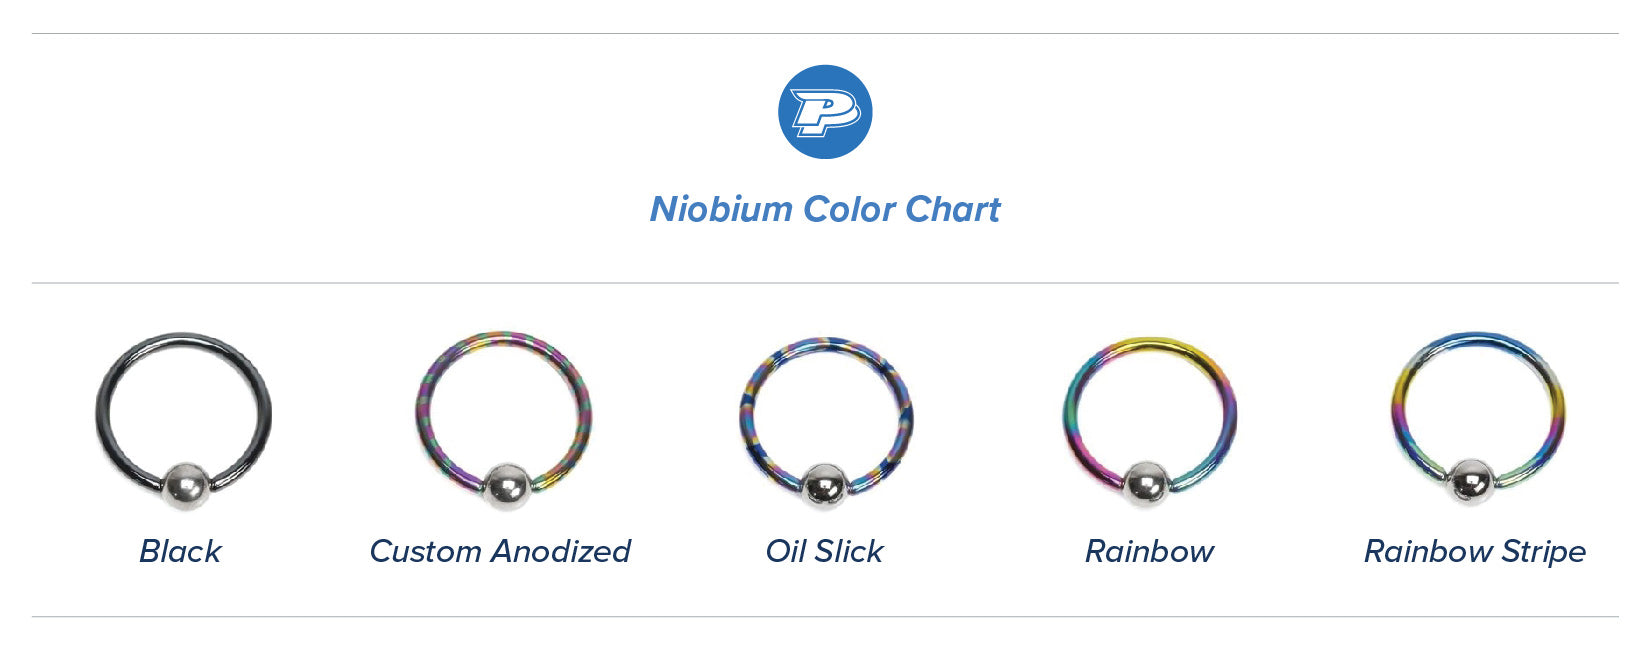 Niobium Color Chart